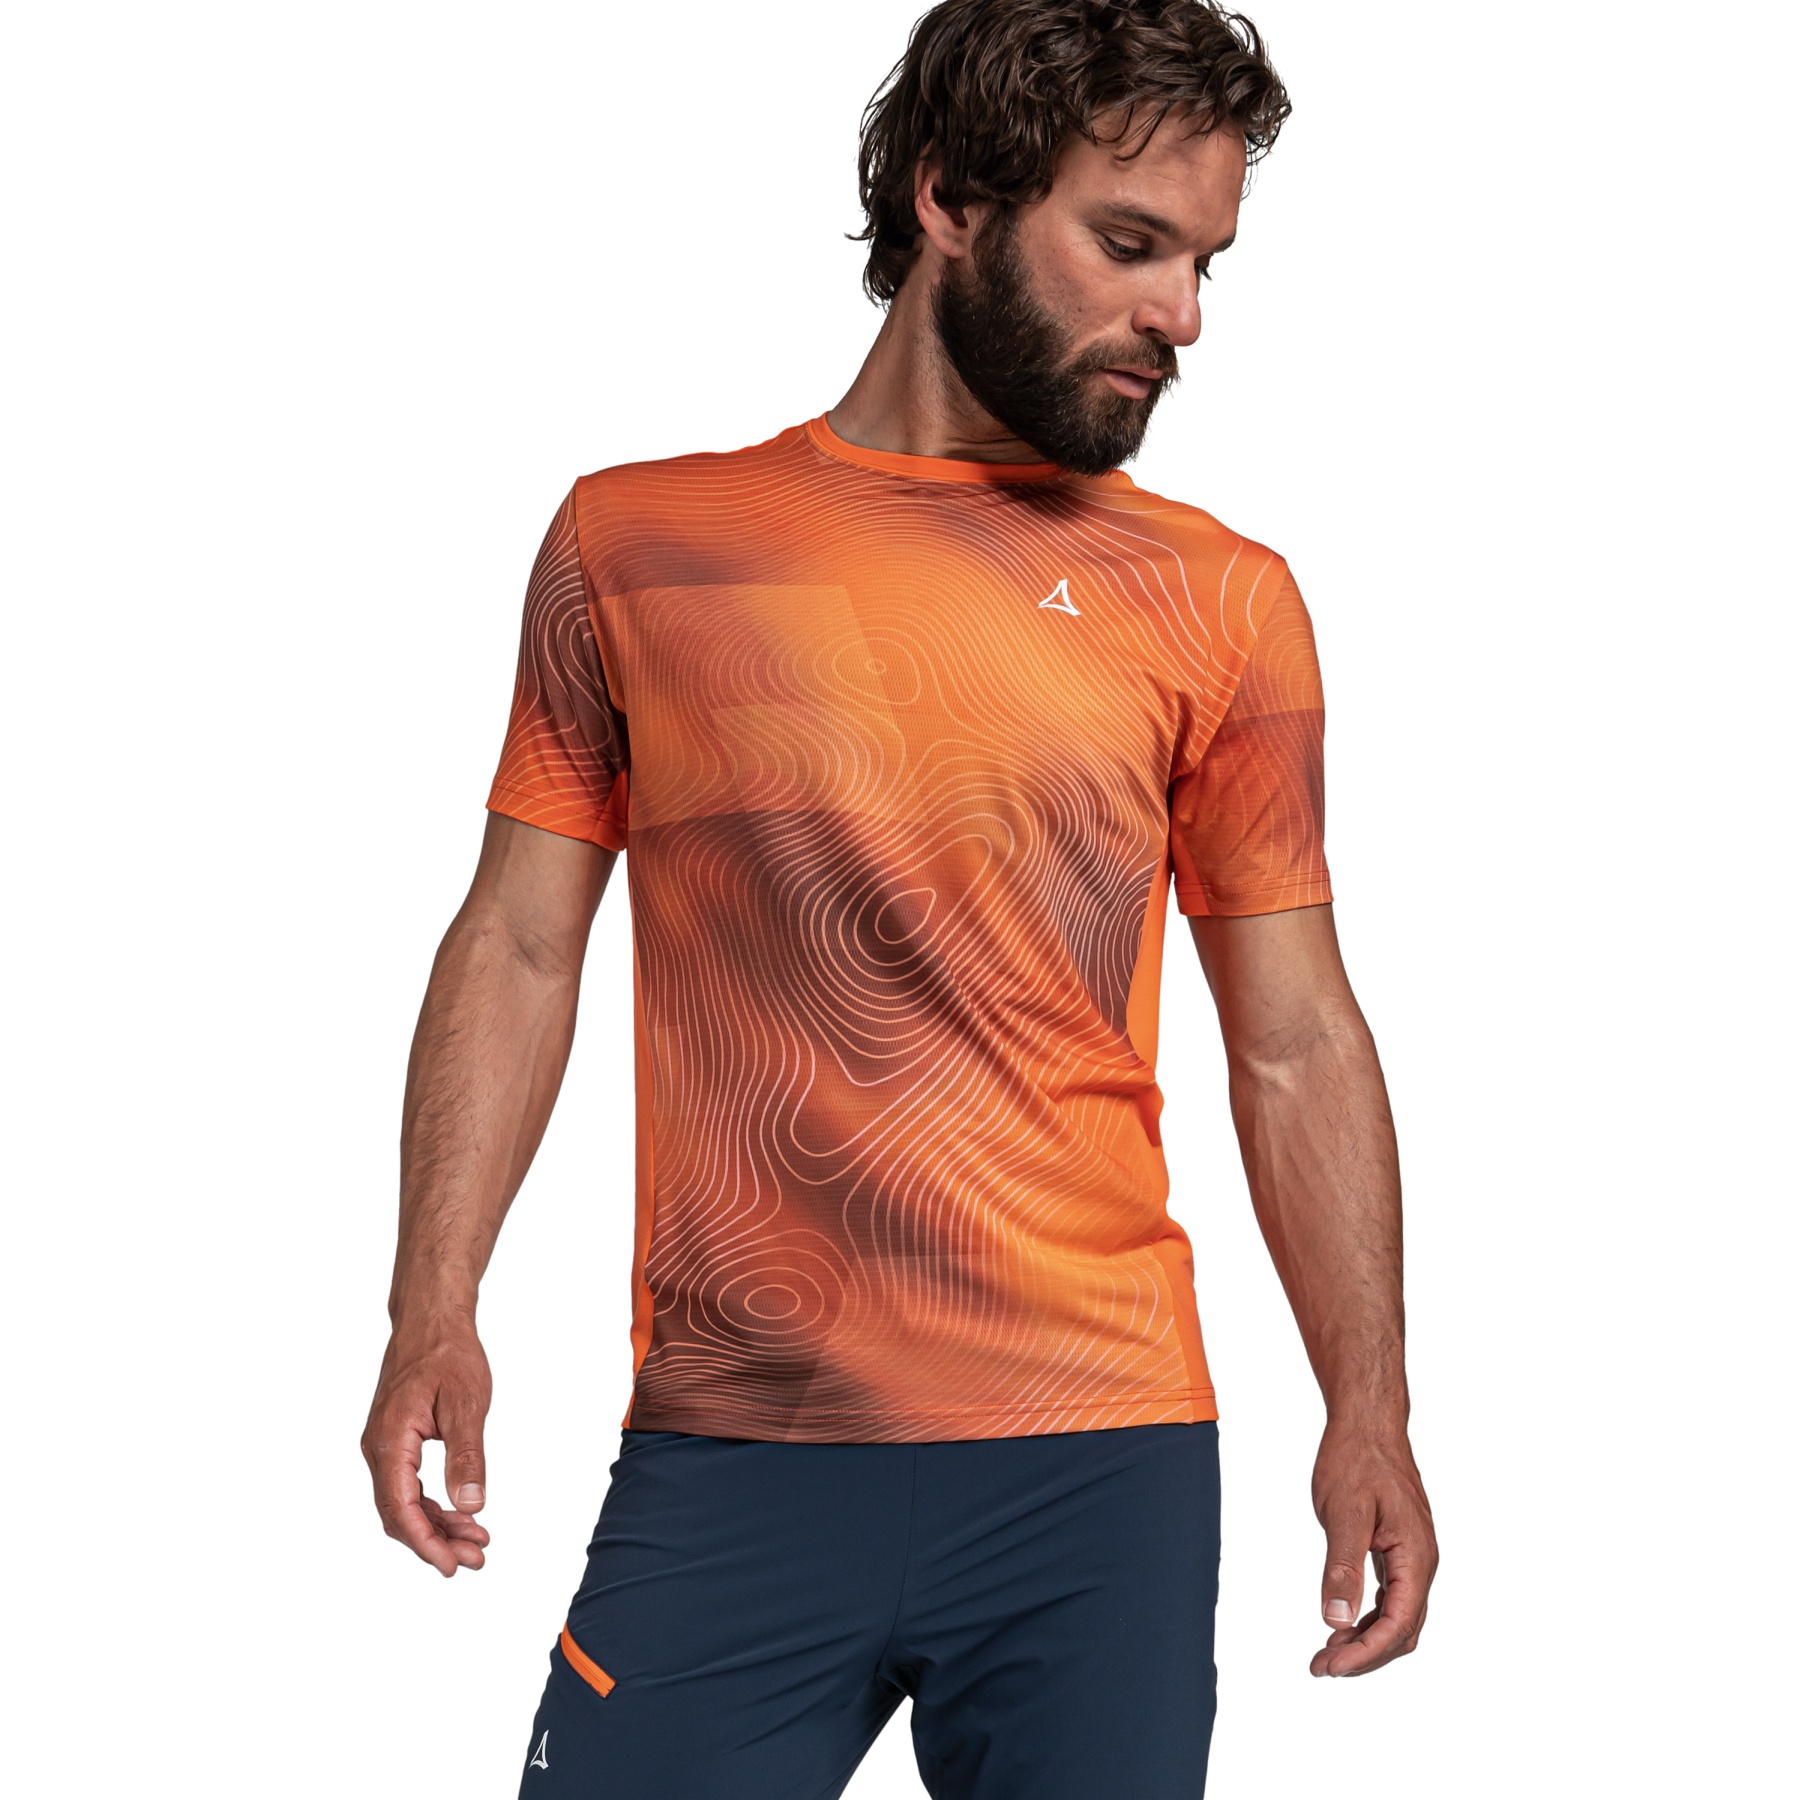 Produktbild von Schöffel Ardal T-Shirt Herren - rot orange 5360